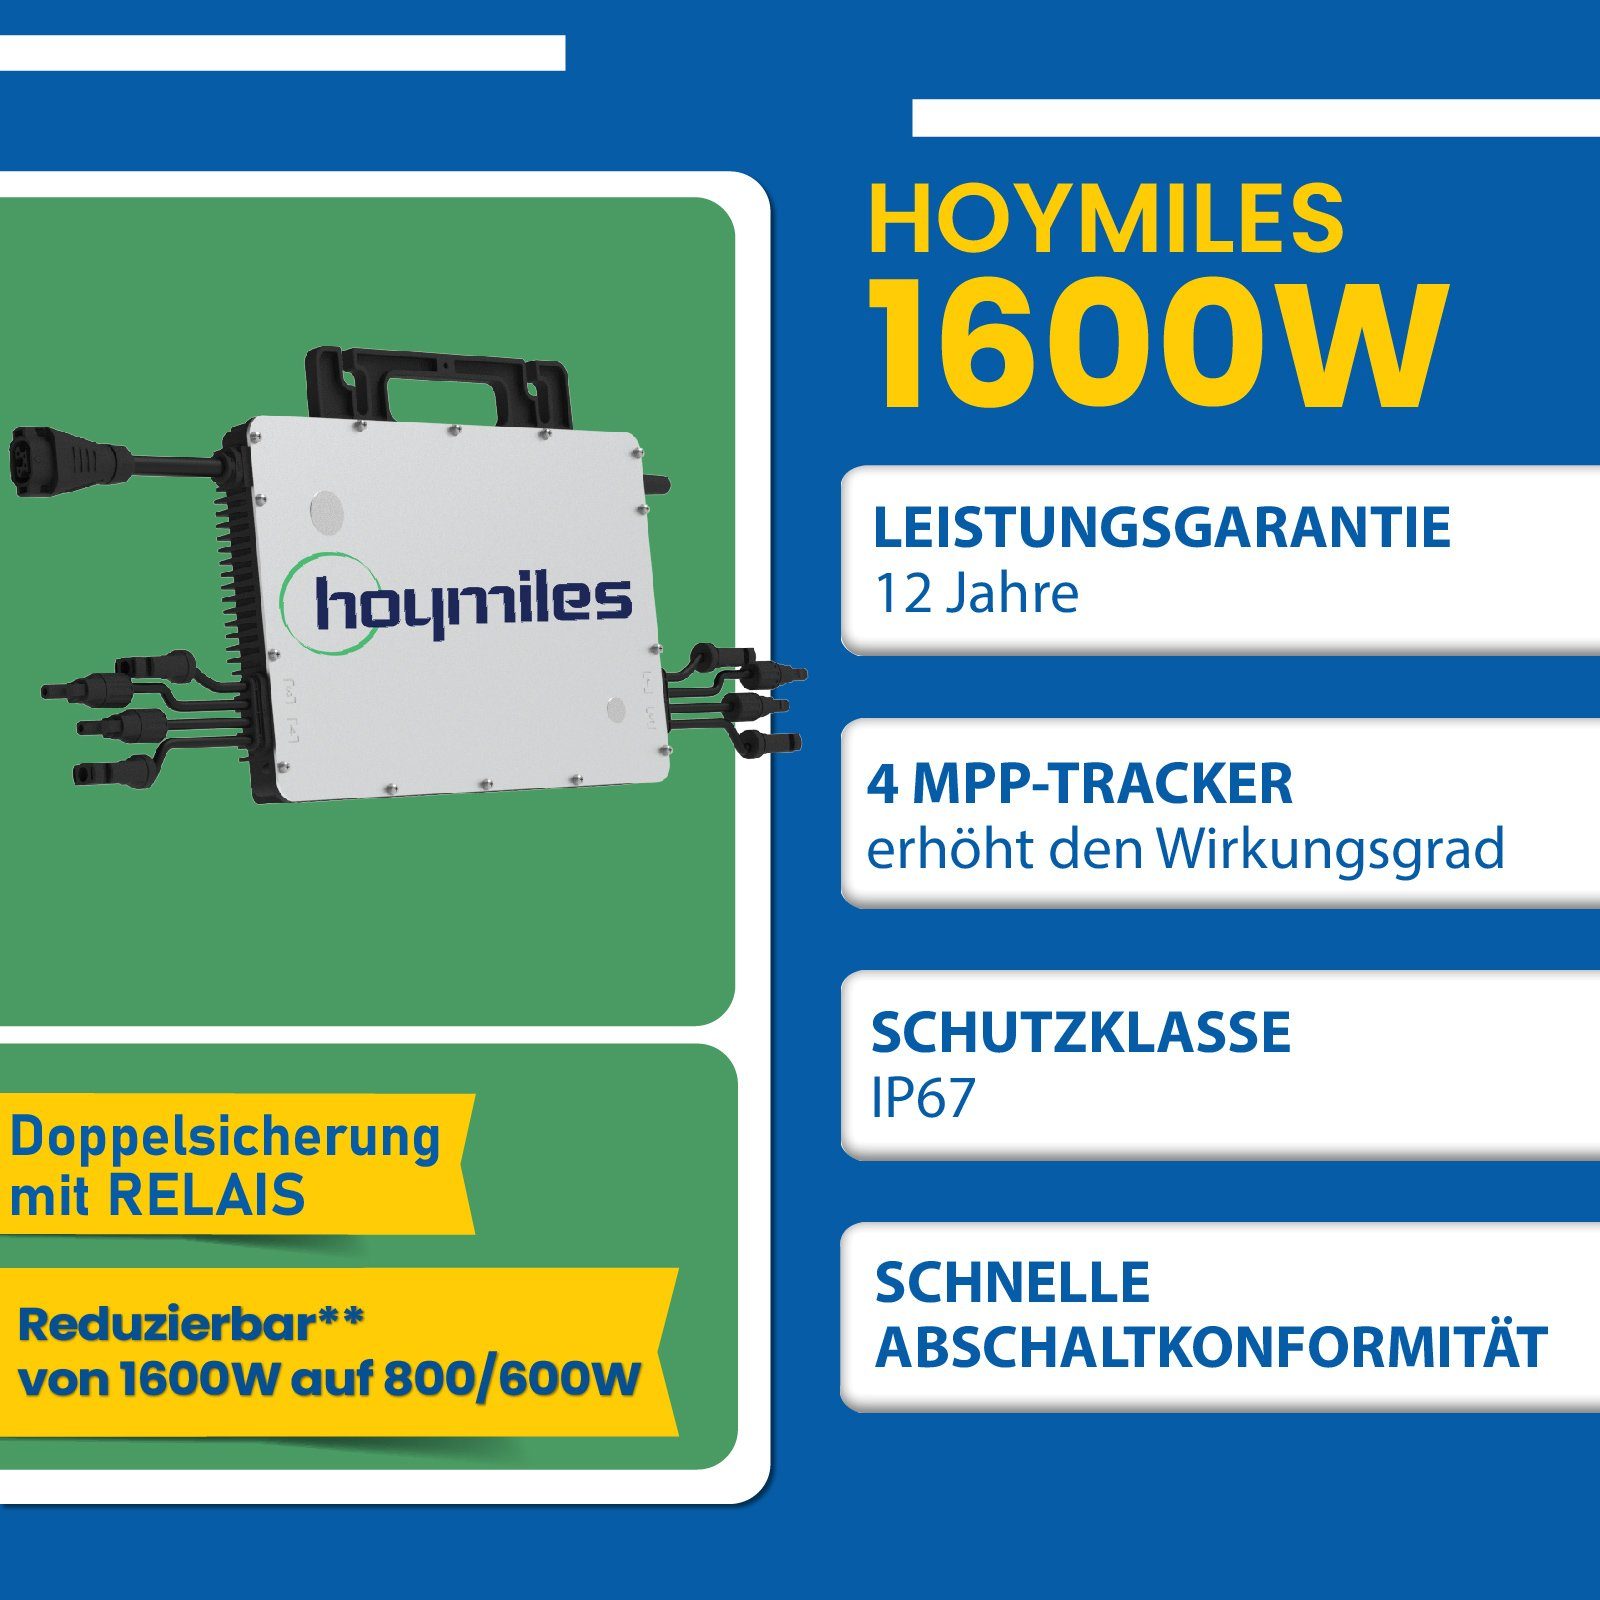 EPP.Solar Solaranlage Balkongeländer Photovoltaik 1600W HMS-1600-4T mit Hoymiles Wechselrichter, Eckig DTU-WLite-S) Balkonkraftwerk, (4x (PV-Montage 400W)